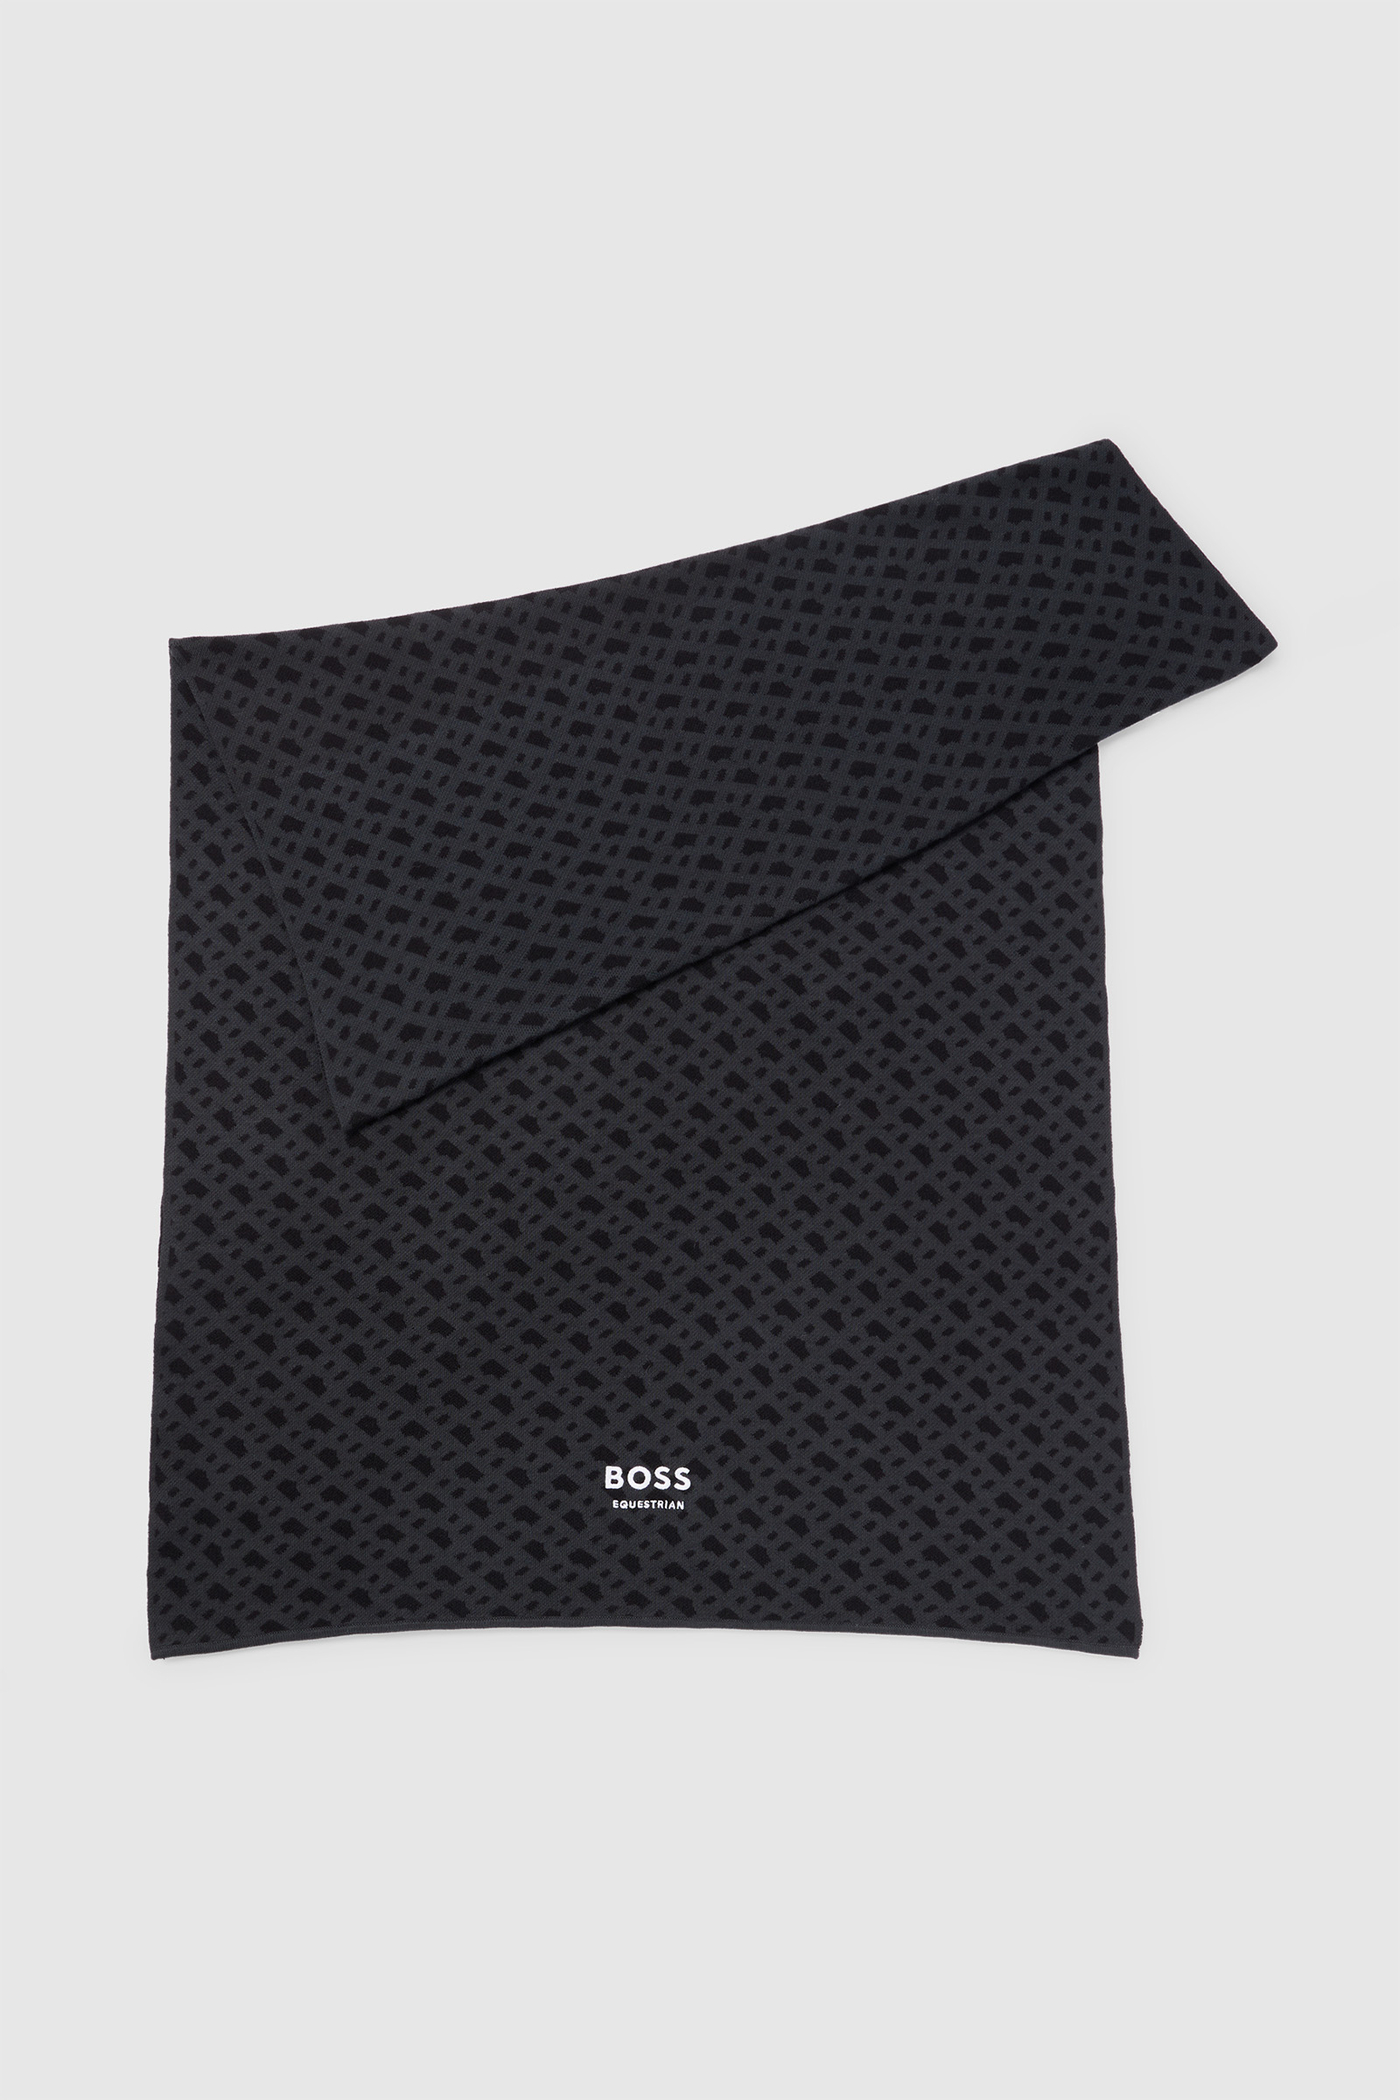 Holen Sie sich das echte Angebot zu einem tollen Preis! Boss Monogram kaufen Schal